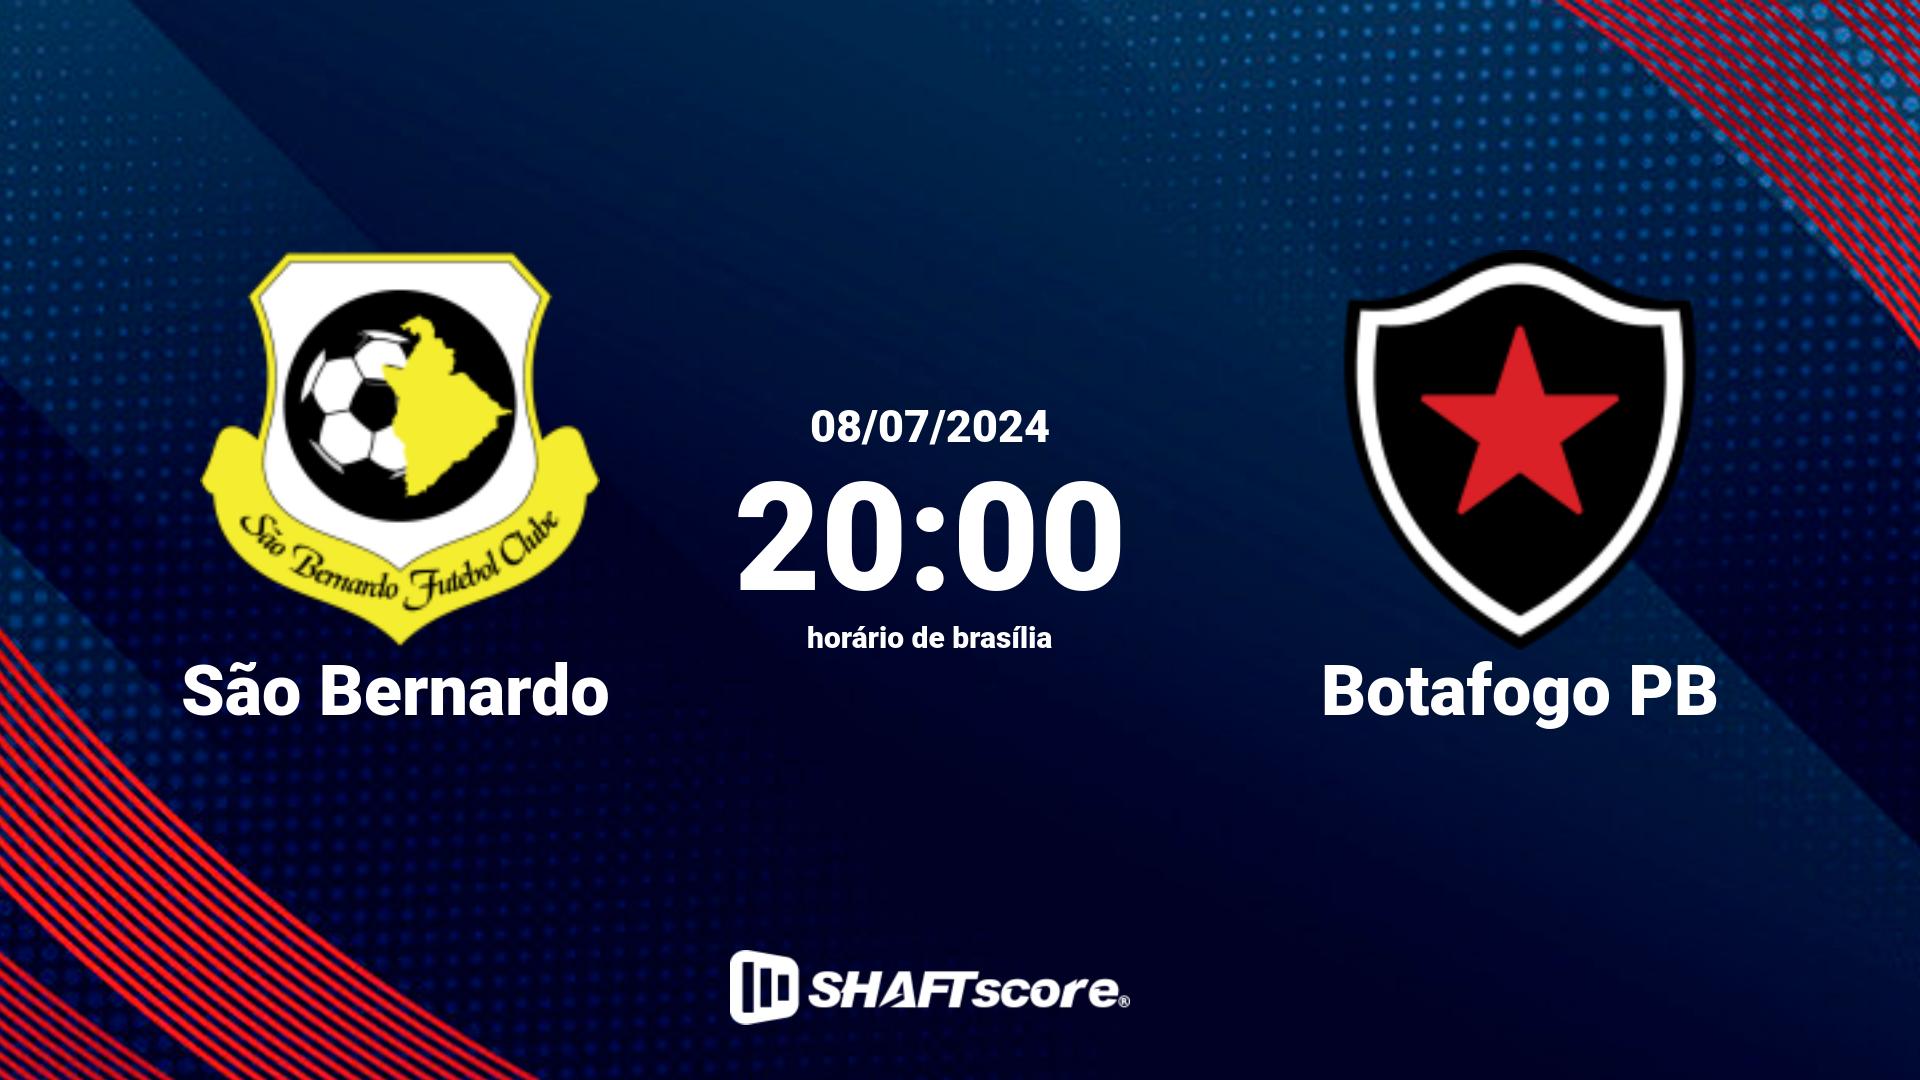 Estatísticas do jogo São Bernardo vs Botafogo PB 08.07 20:00